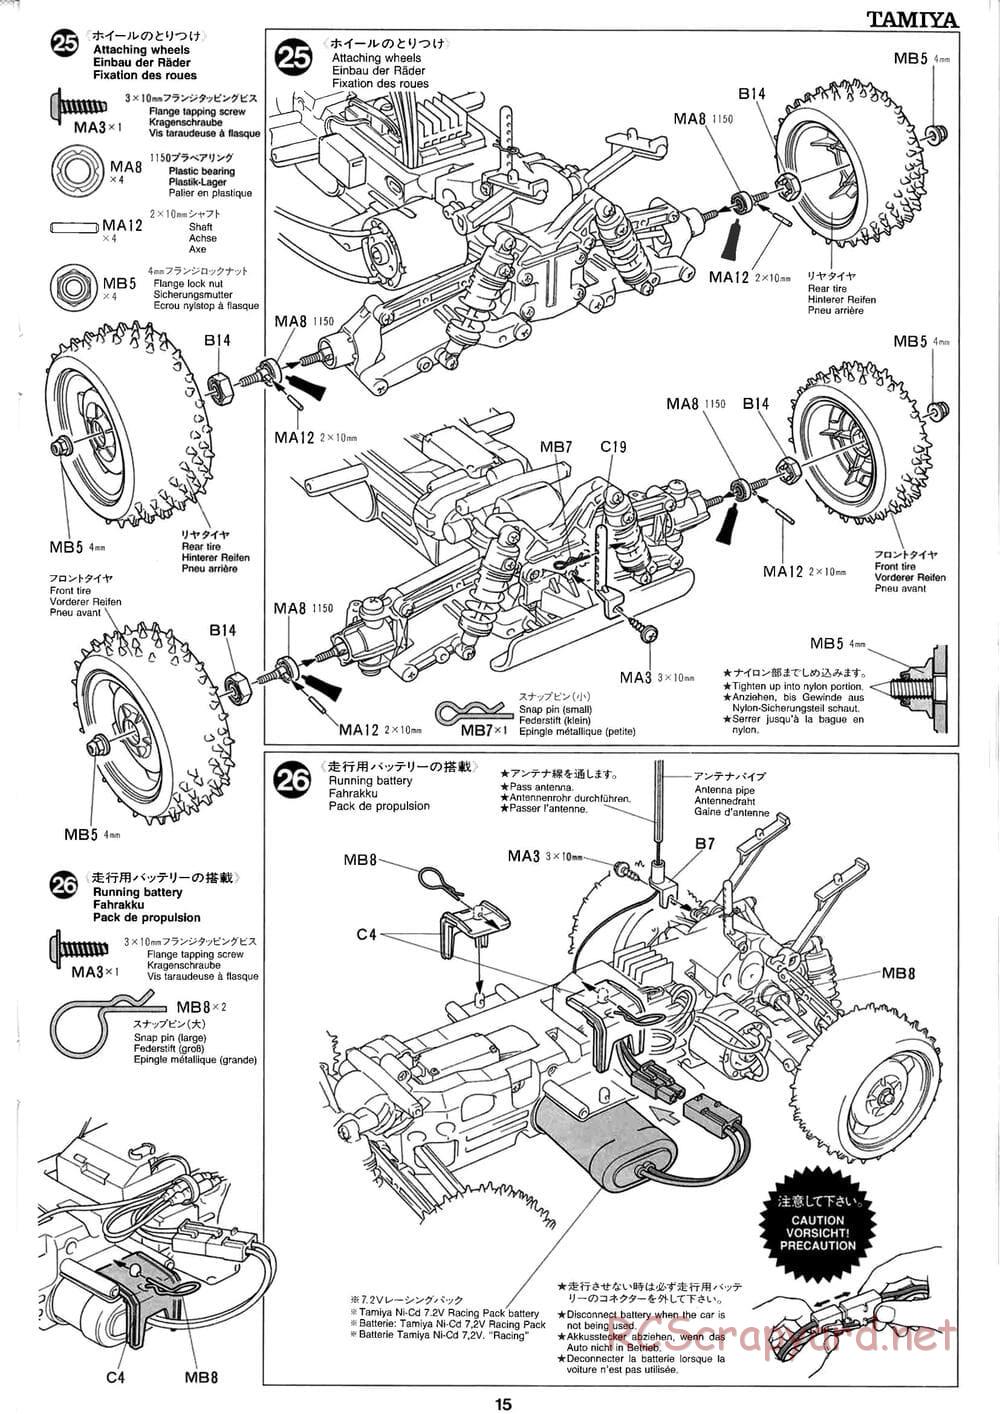 Tamiya - Baja Champ - TL-01B Chassis - Manual - Page 15